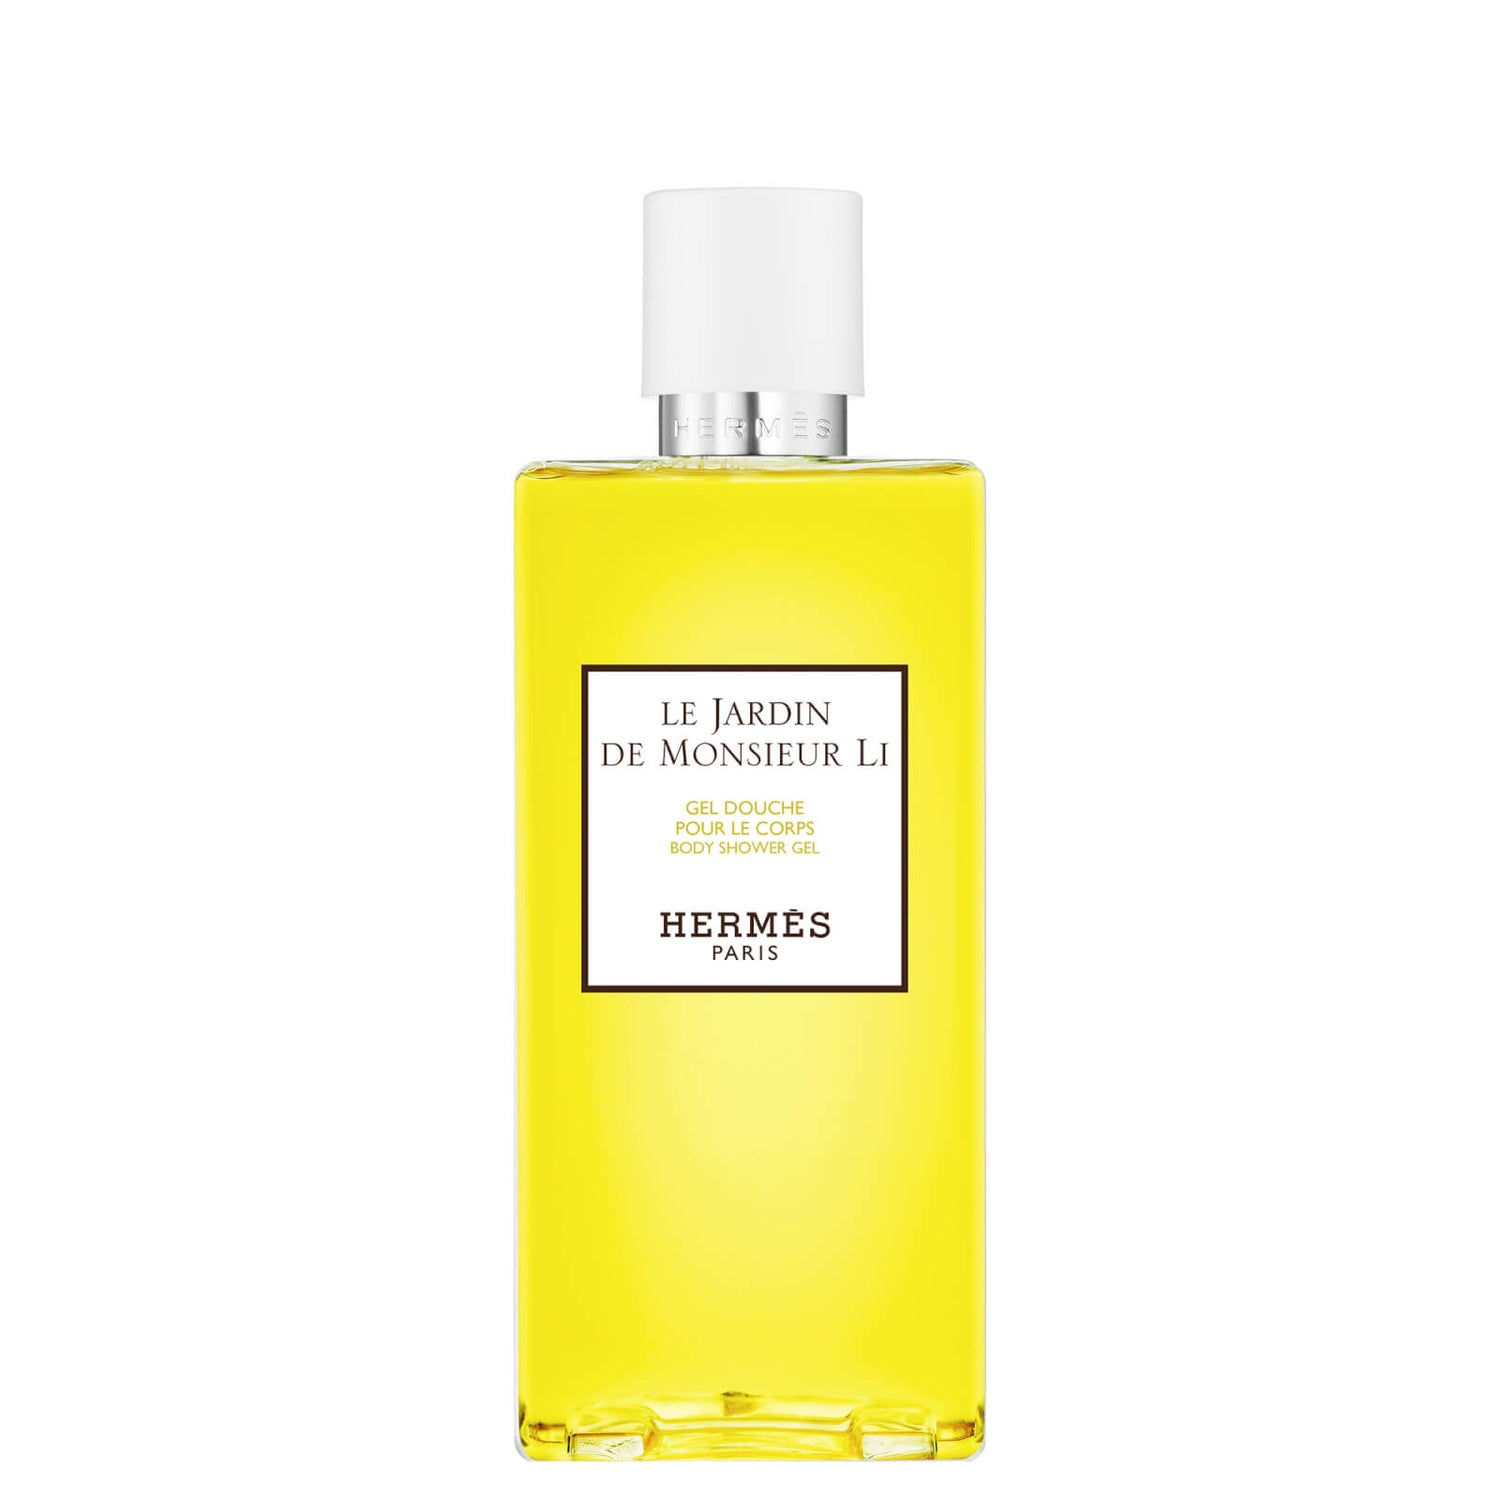 Hermès Le Jardin De Monsieur Li Body Shower Gel 200ml